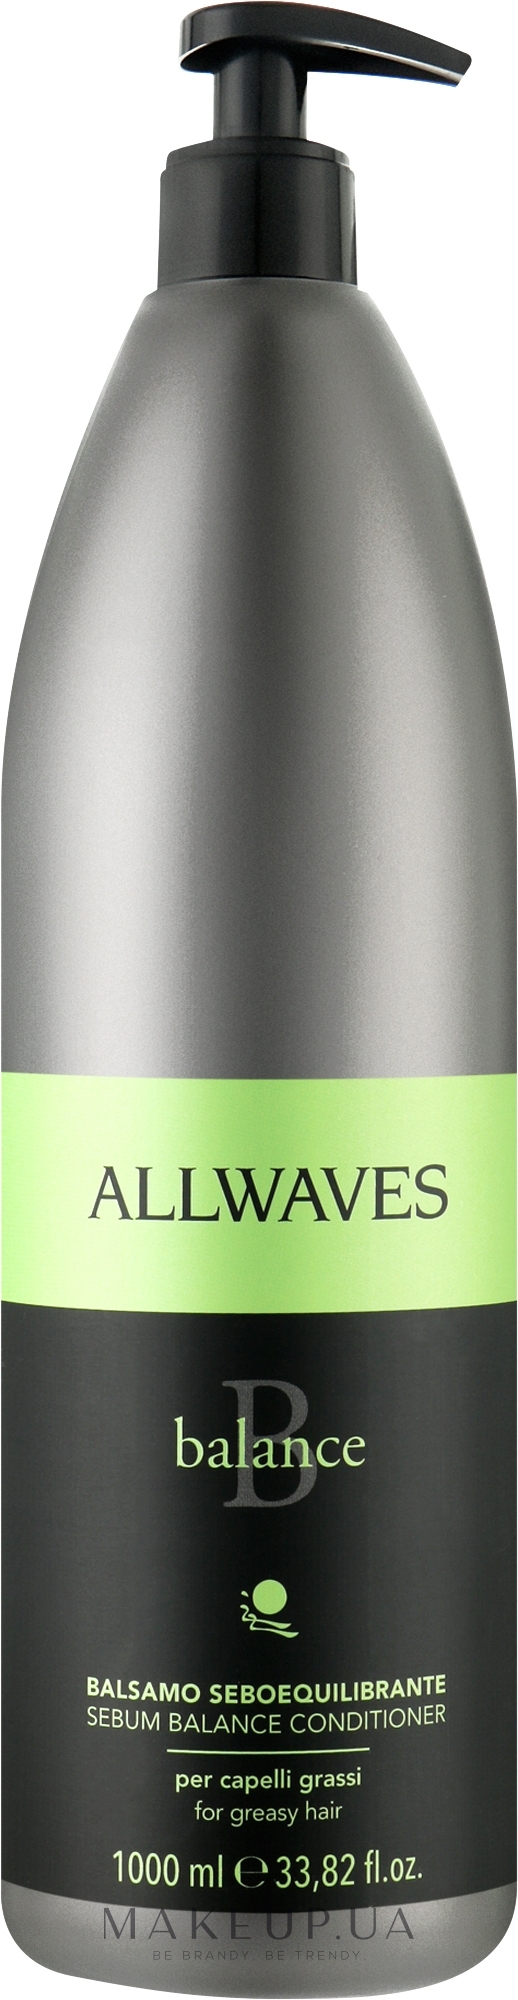 Кондиционер для жирных волос - Allwavs Balance Sebum Balancing Conditioner — фото 1000ml